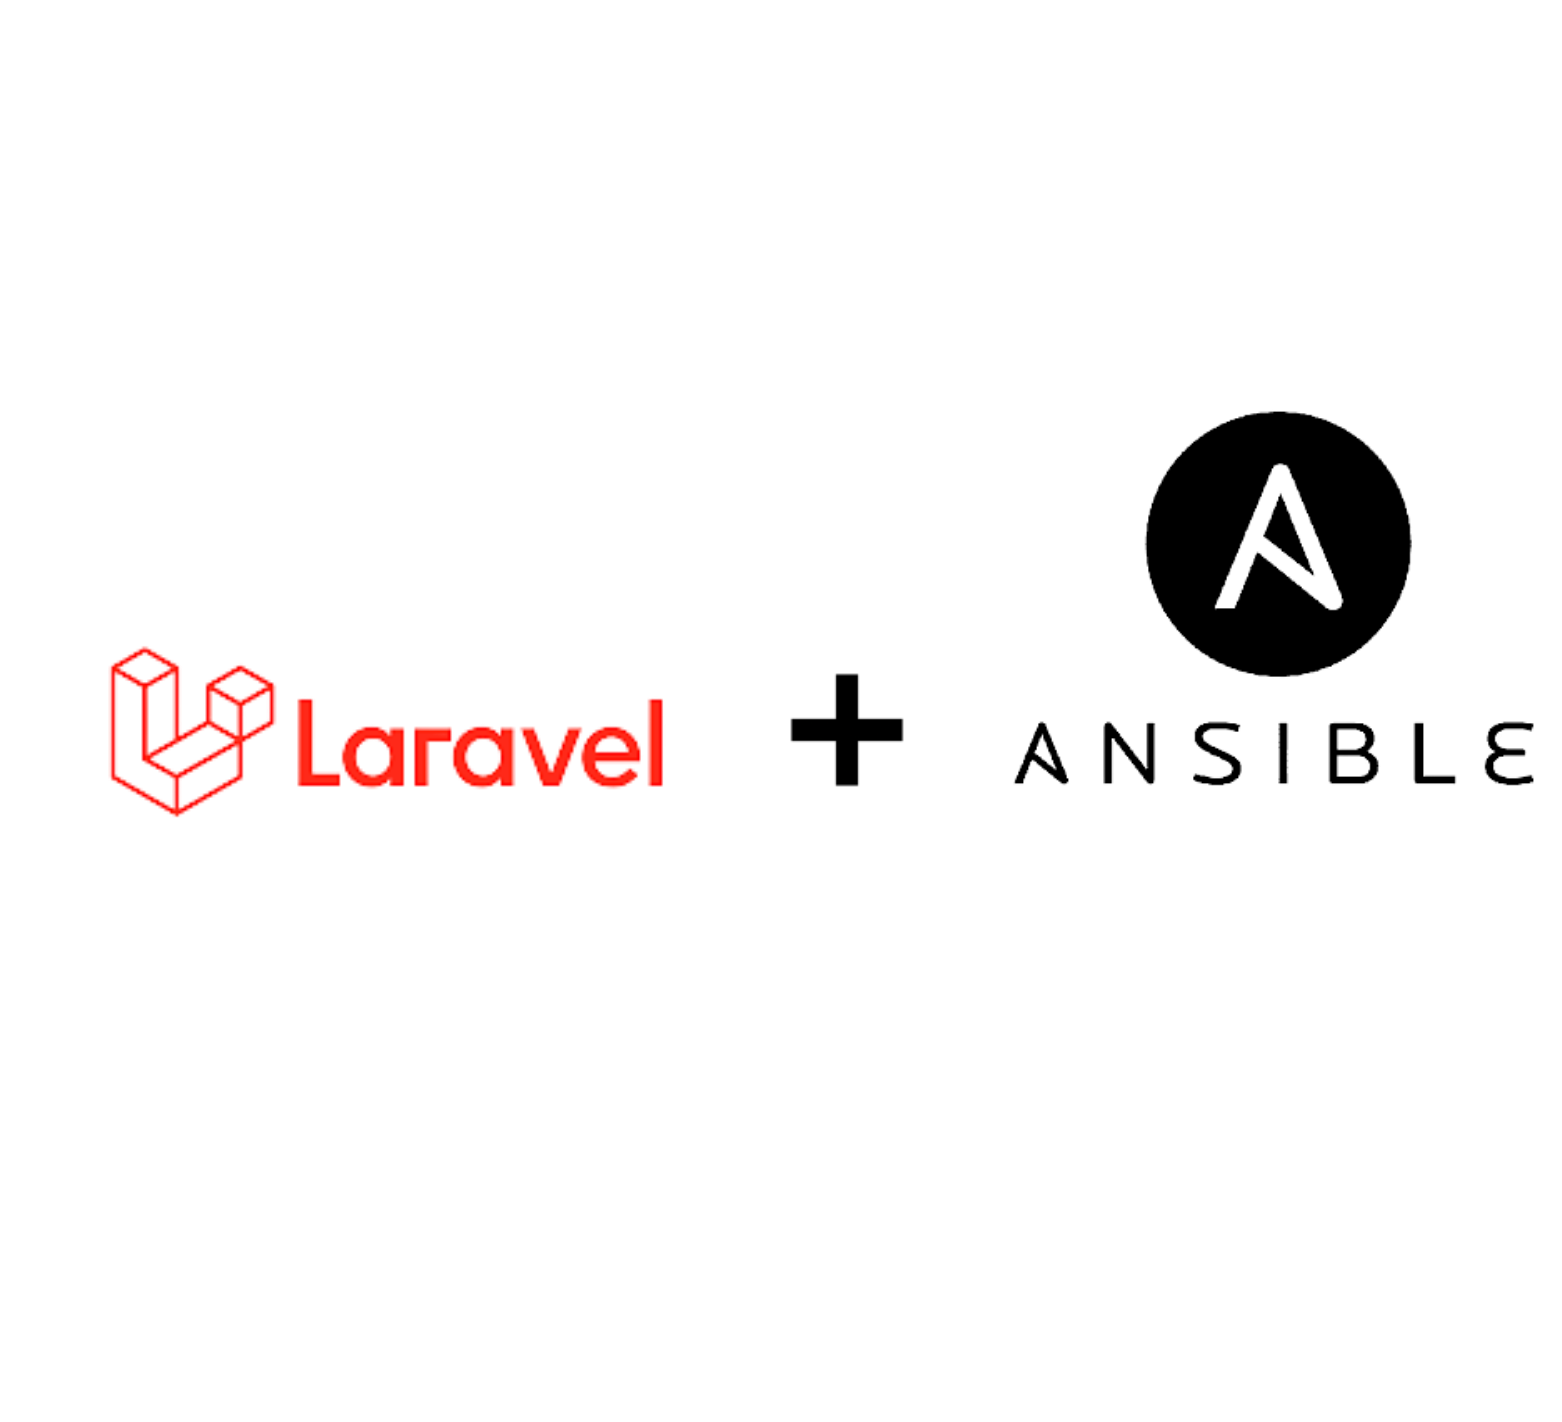 ansible & laravel logos